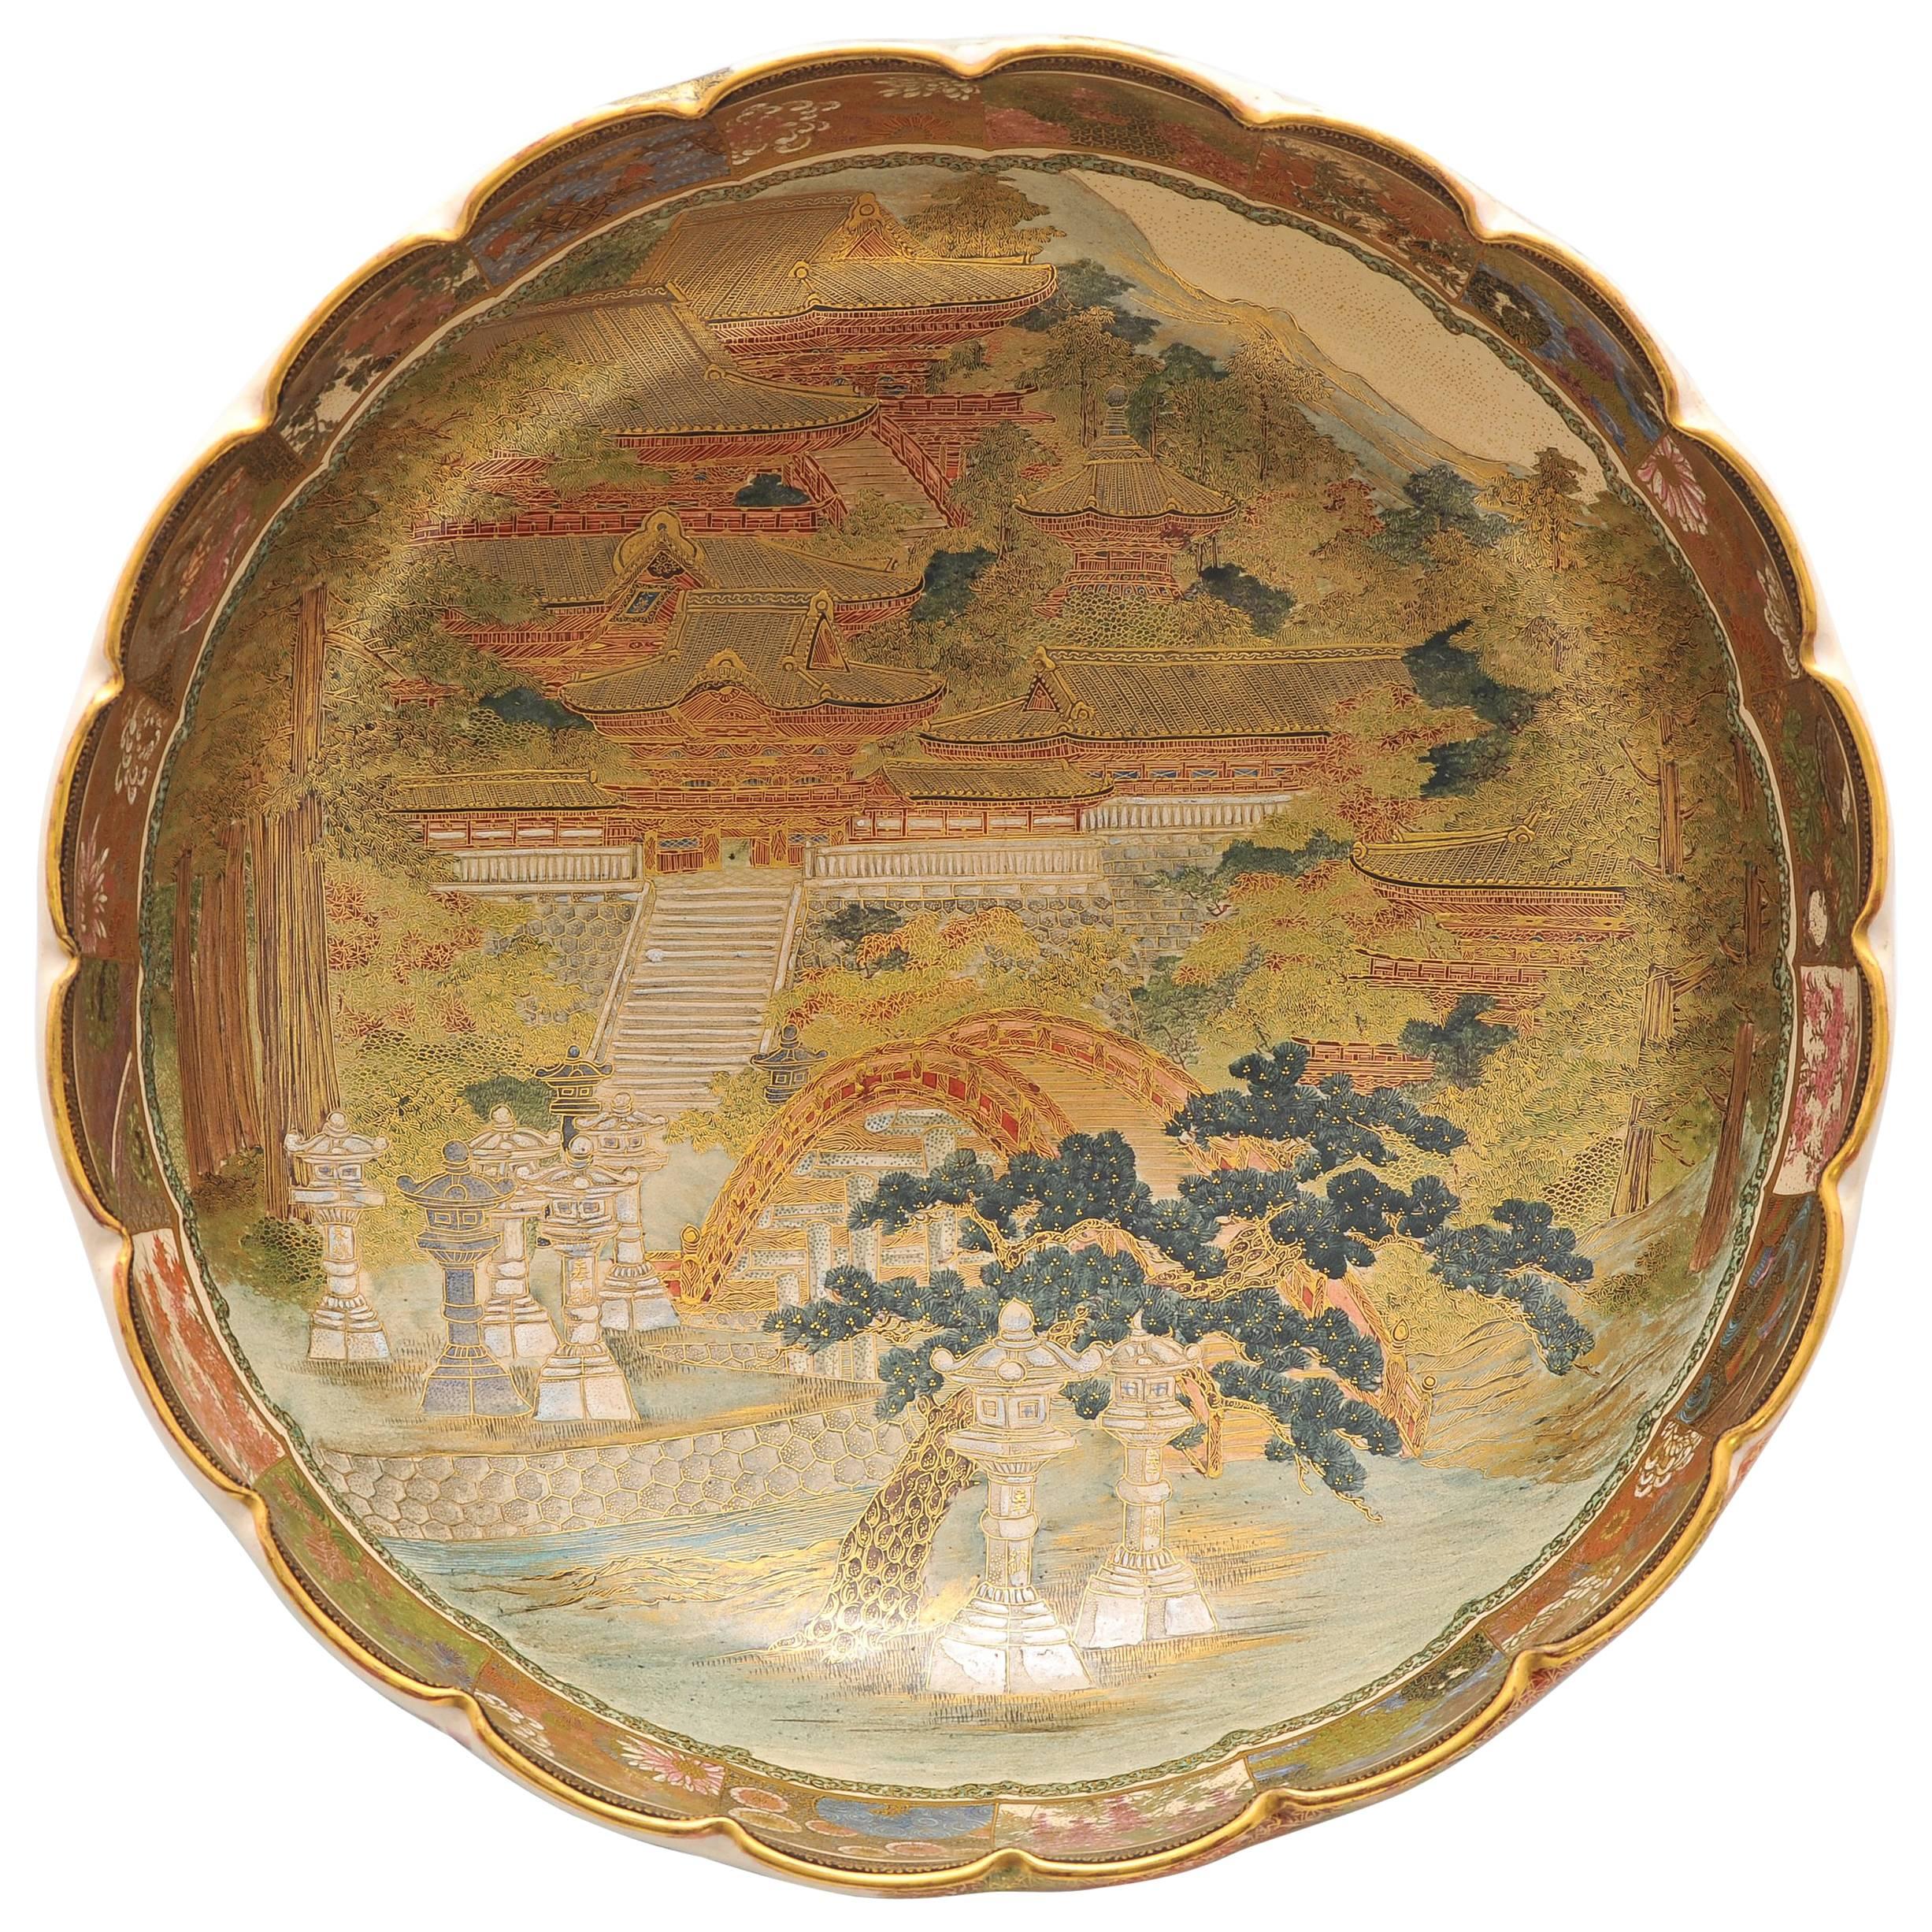 Large 19th Century Japanese Satsuma Bowl